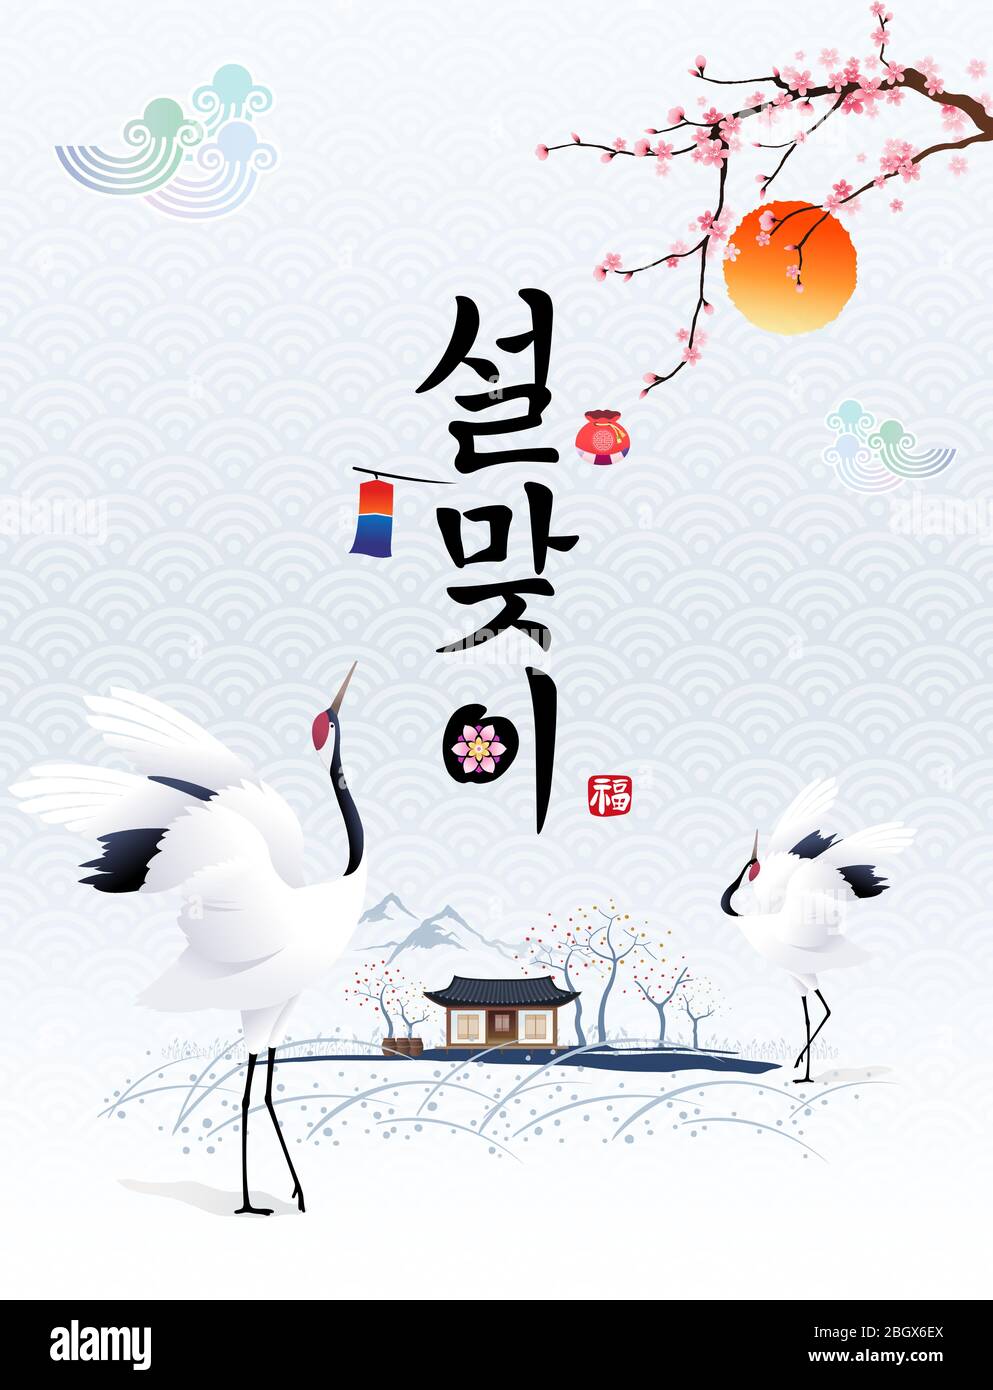 Frohes neues Jahr, Übersetzung des Koreanischen Textes: Frohes neues Jahr, Kalligraphie und koreanische traditionelle Häuser und tanzende Kraniche. Stock Vektor